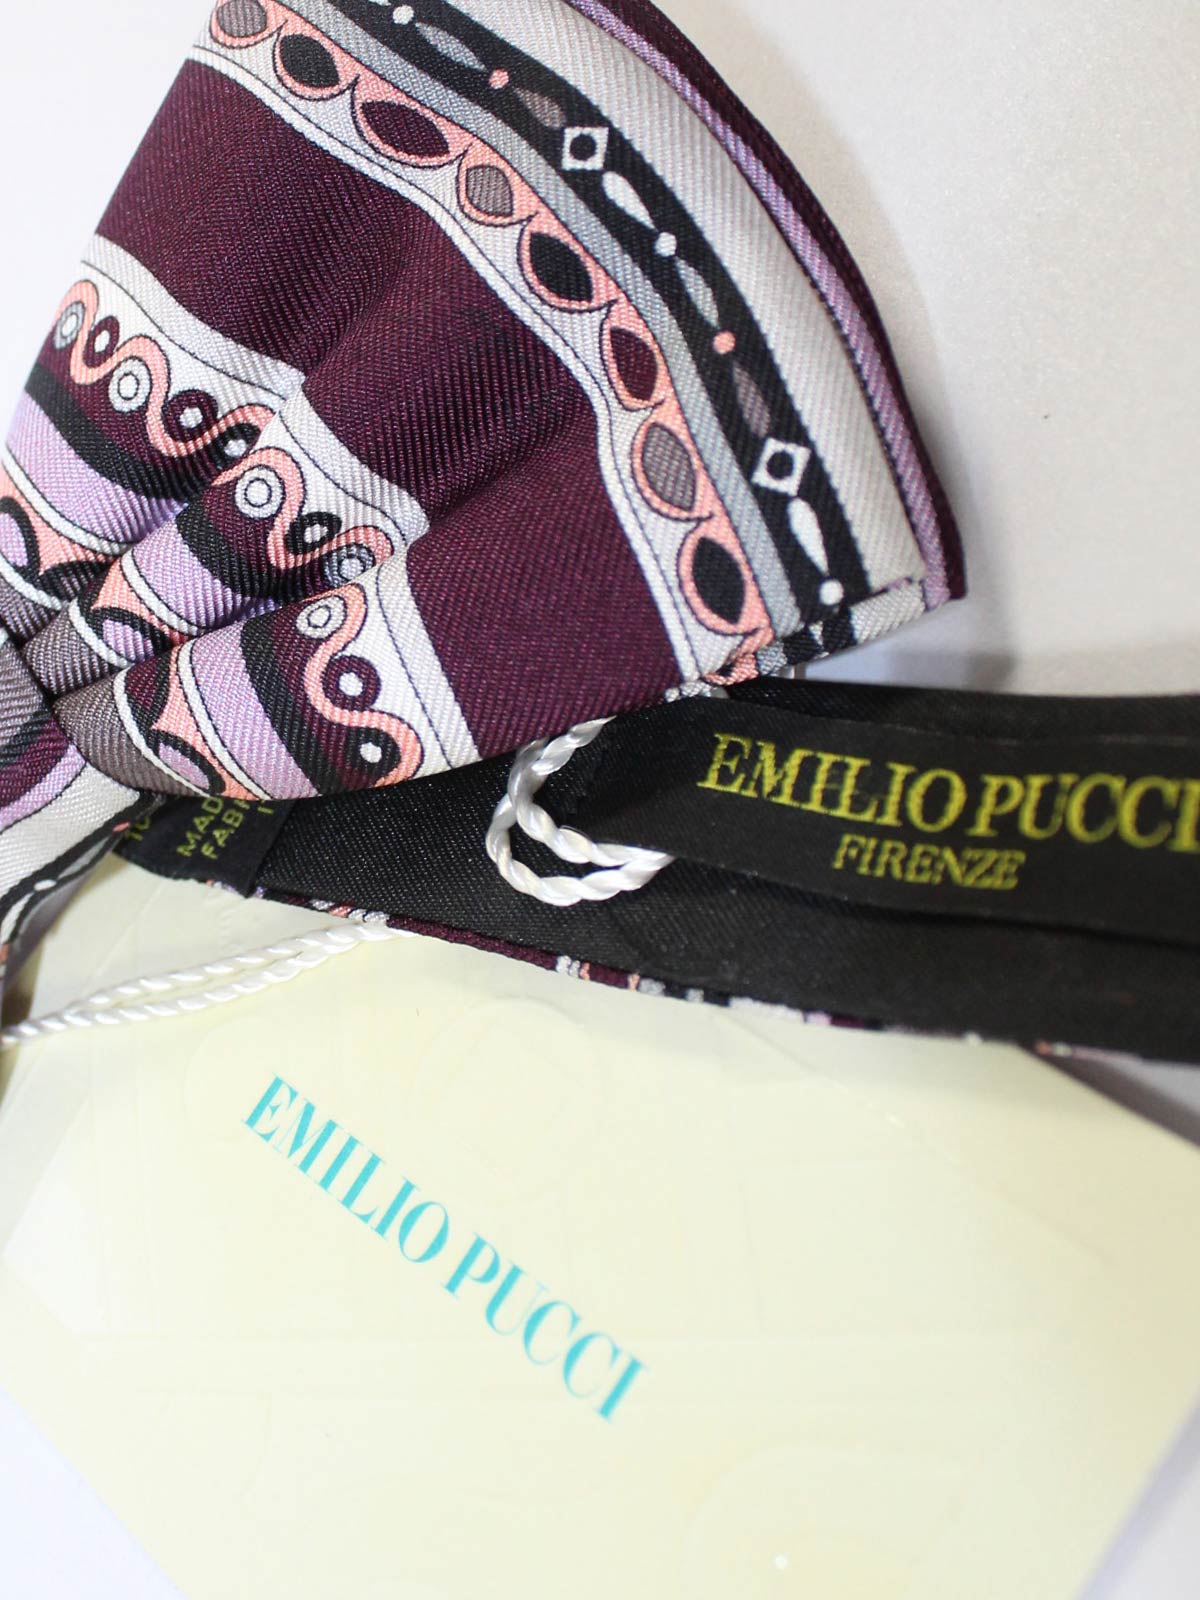 Emilio Pucci Silk Bow Tie Maroon Gray Pink Pre Tied SALE